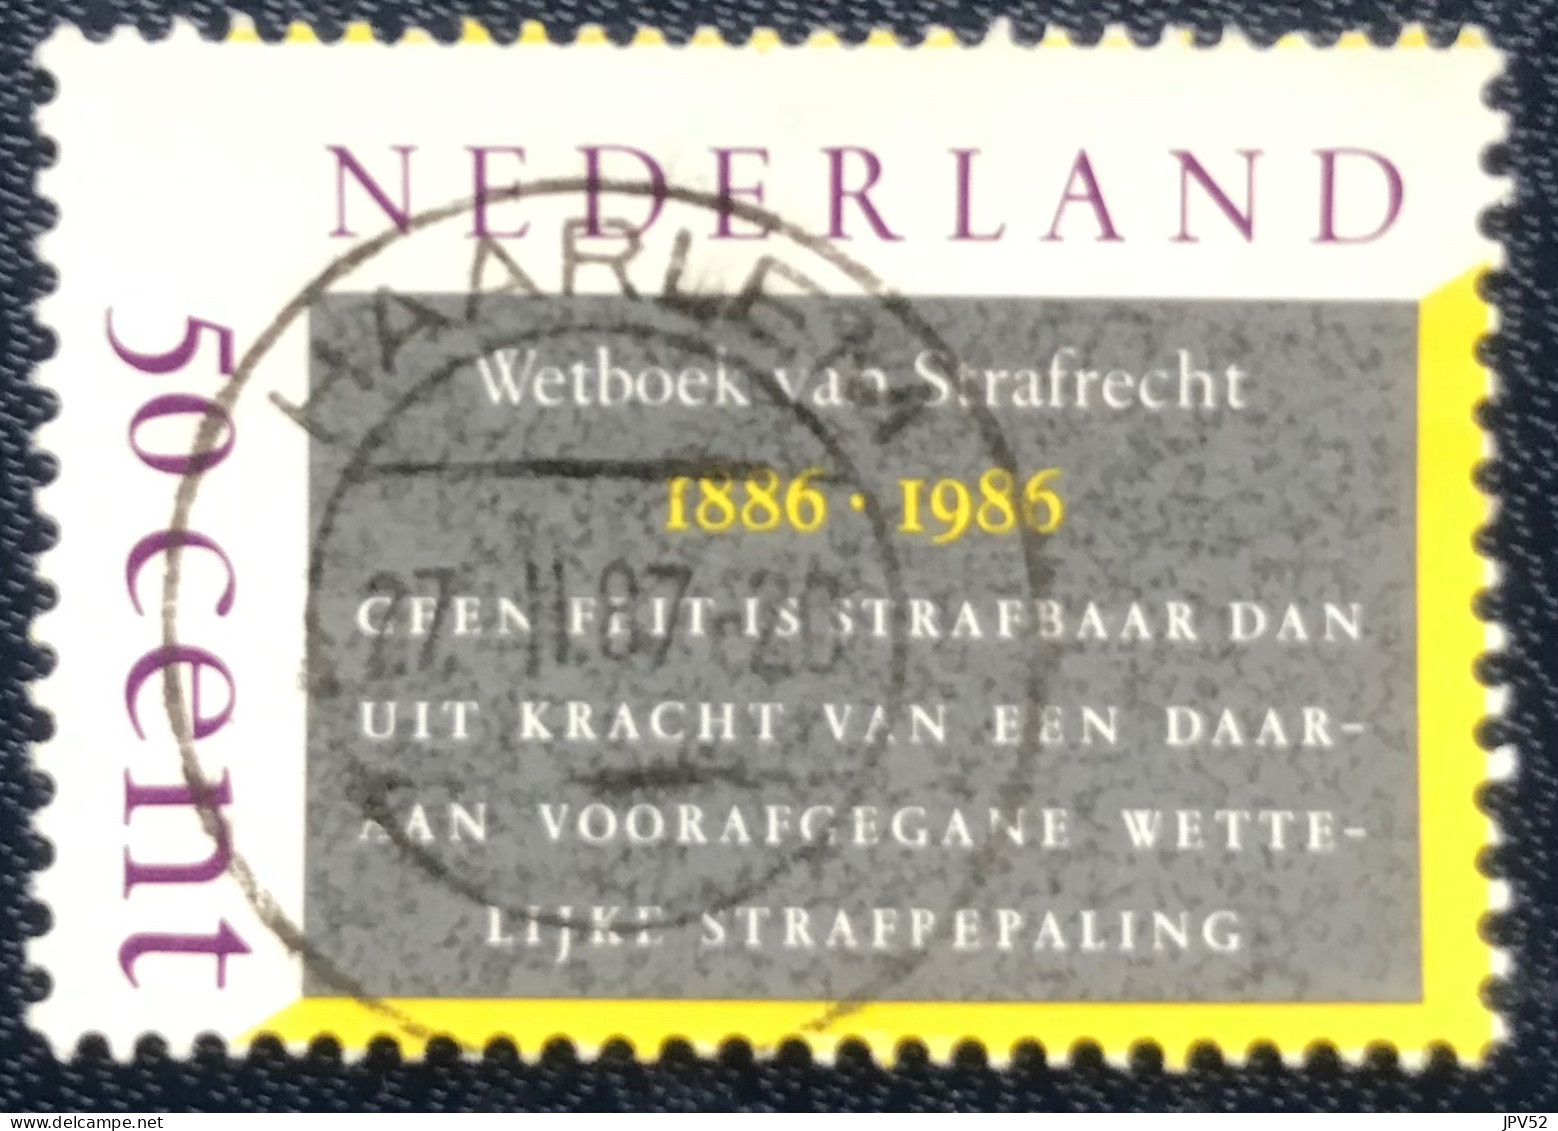 Nederland - C1/24 - 1985 - (°)used - Michel 1285 - 100j Wetboek Van Strafrecht - HAARLEM - Usati